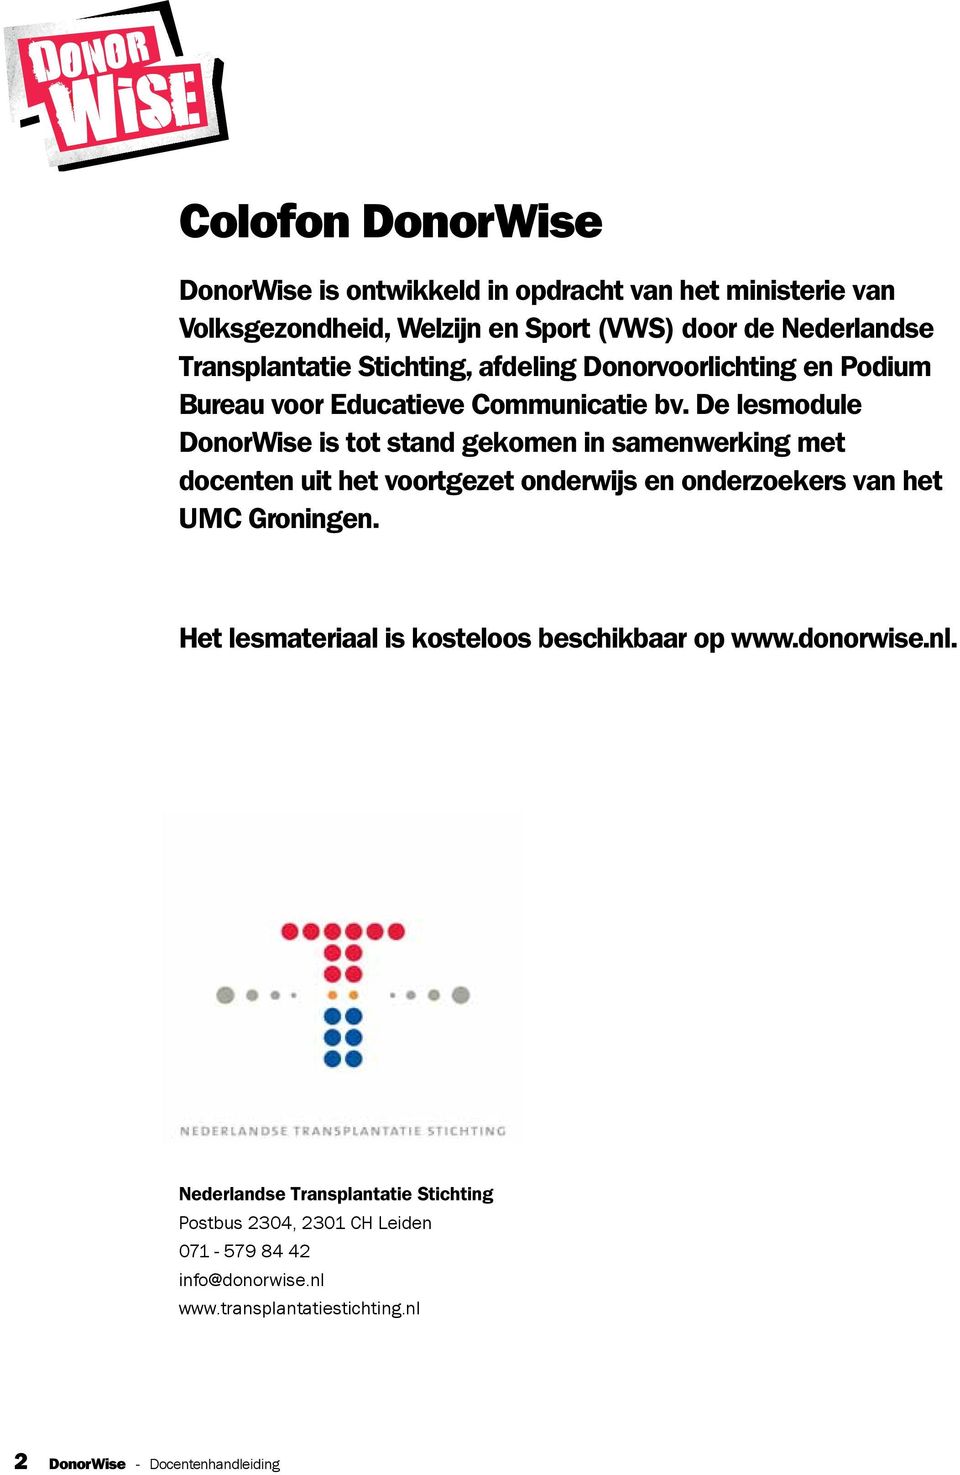 De lesmodule DonorWise is tot stand gekomen in samenwerking met docenten uit het voortgezet onderwijs en onderzoekers van het UMC Groningen.